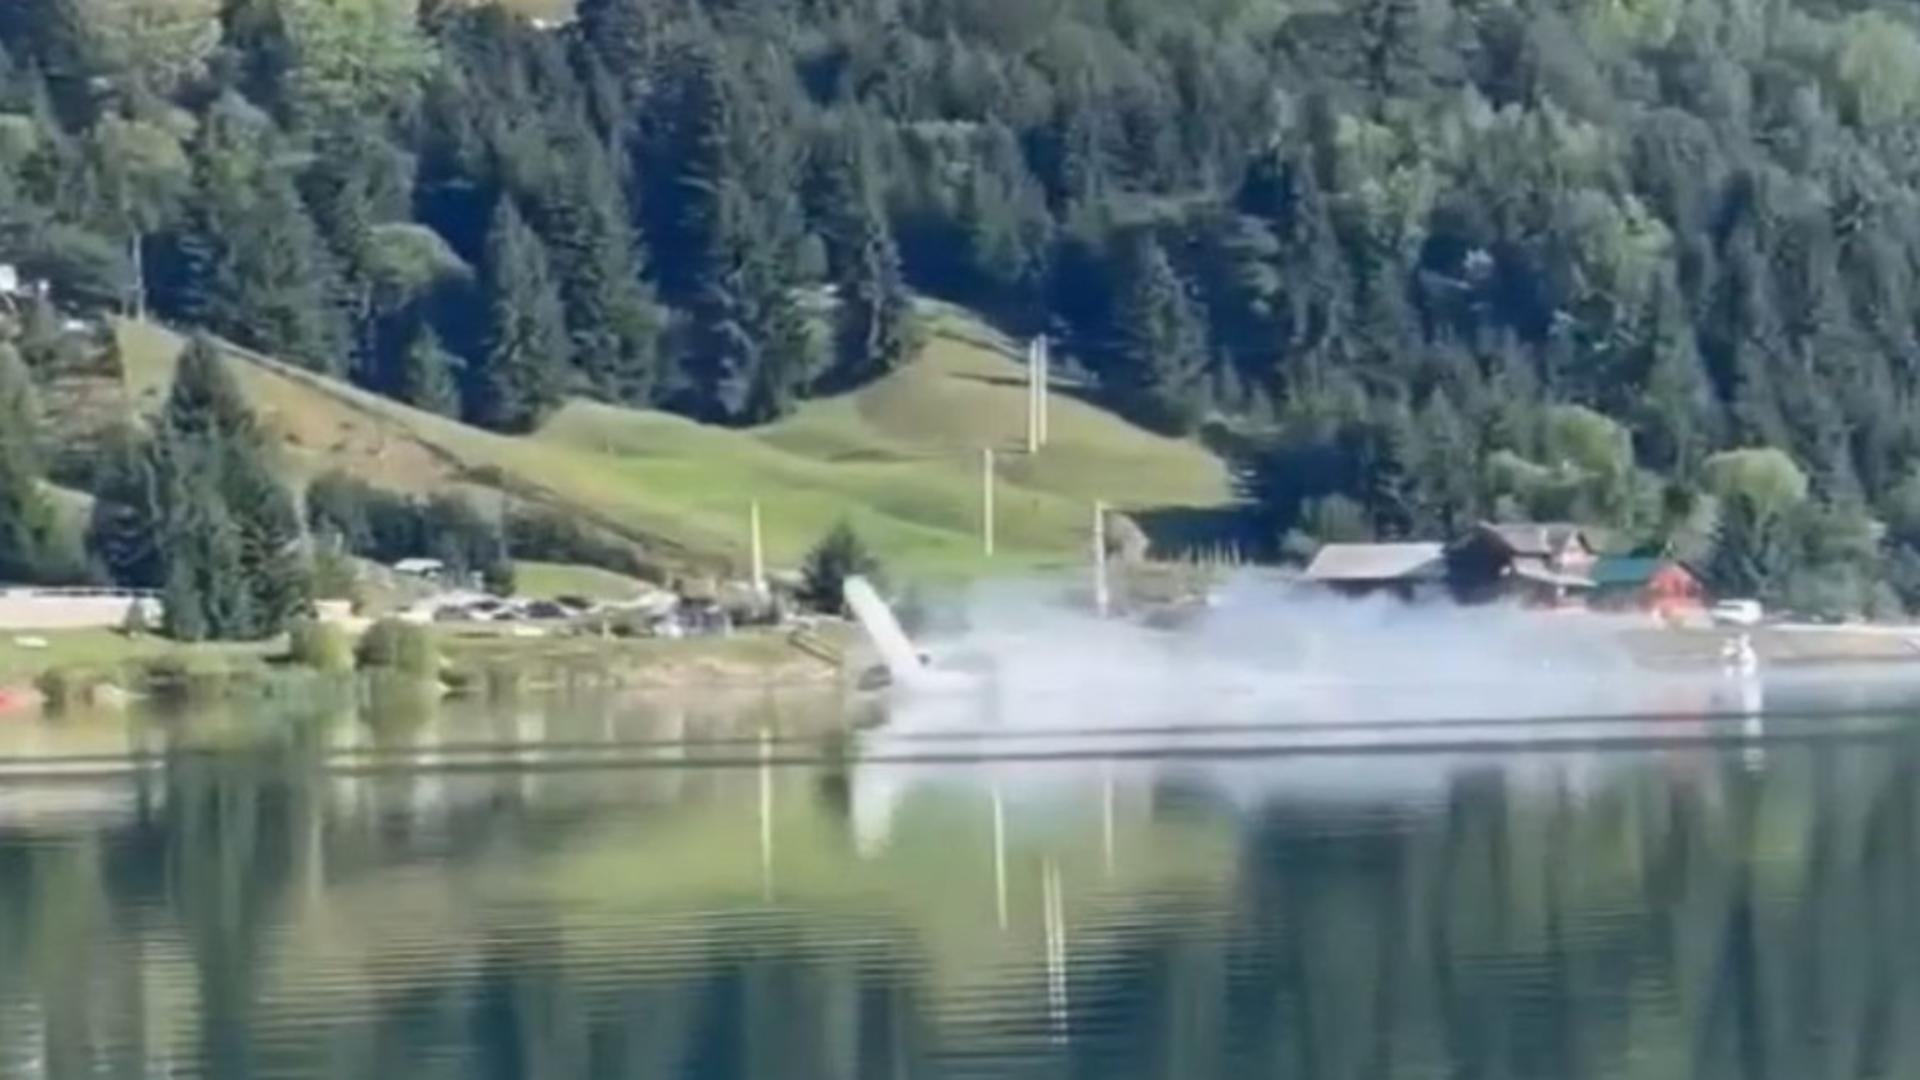 Momentul în care avionul se prăbușește în lacul Colibița - Imagini șocante de la impactul cu apa - VIDEO